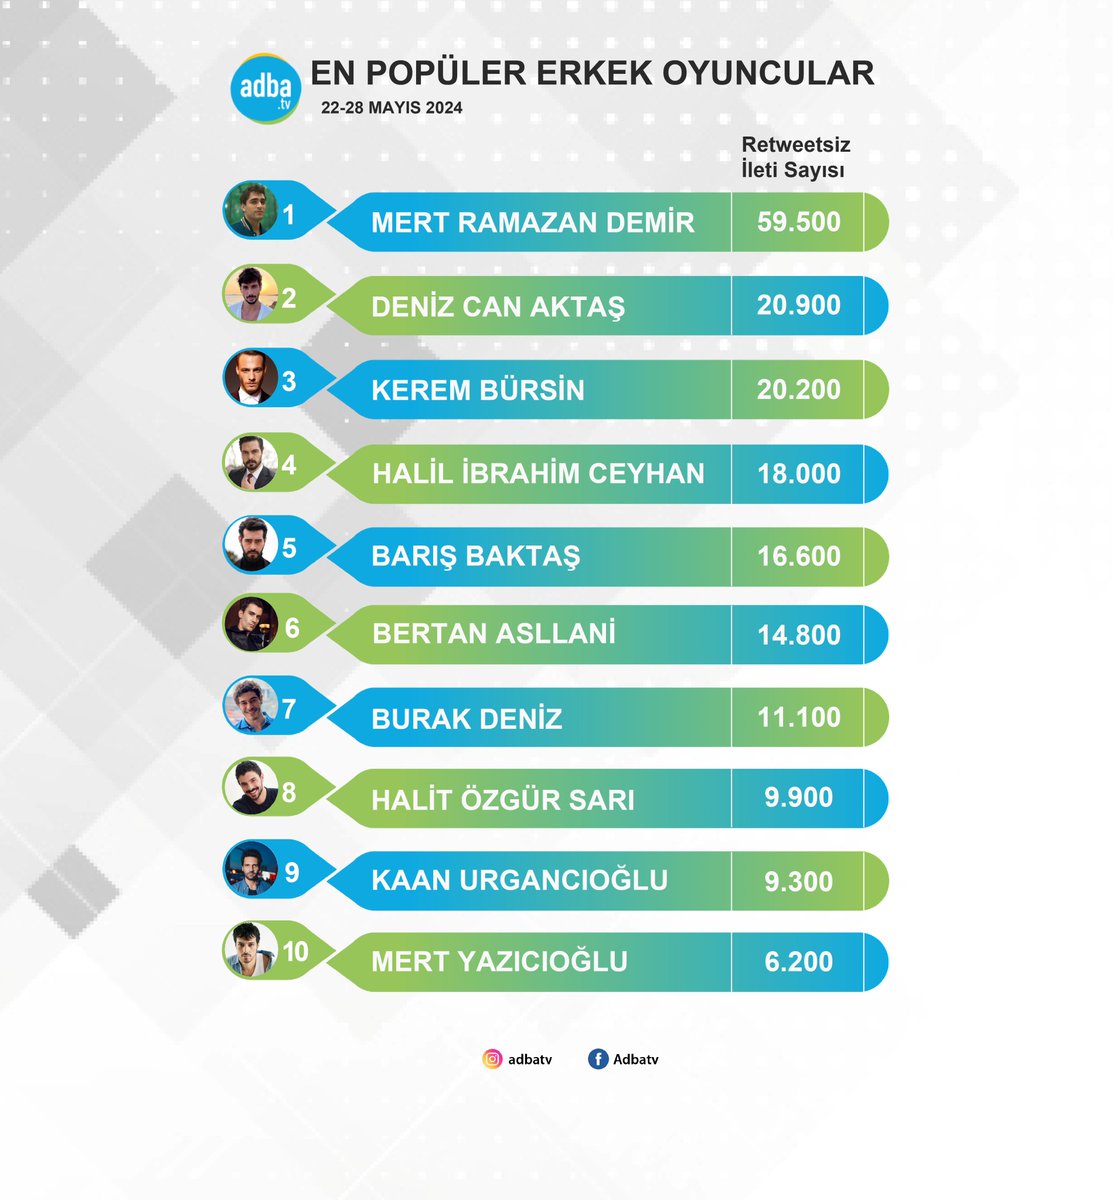 Ekranın en popüler erkek oyuncuları belli oldu! (22-28 Mayıs) #MertRamazanDemir #DenizCanAktaş #KeremBürsin #HalilİbrahimCeyhan #BarışBaktaş #BertanAsllani #BurakDeniz #HalitÖzgürSarı #KaanUrgancıoğlu #MertYazıcıoğlu